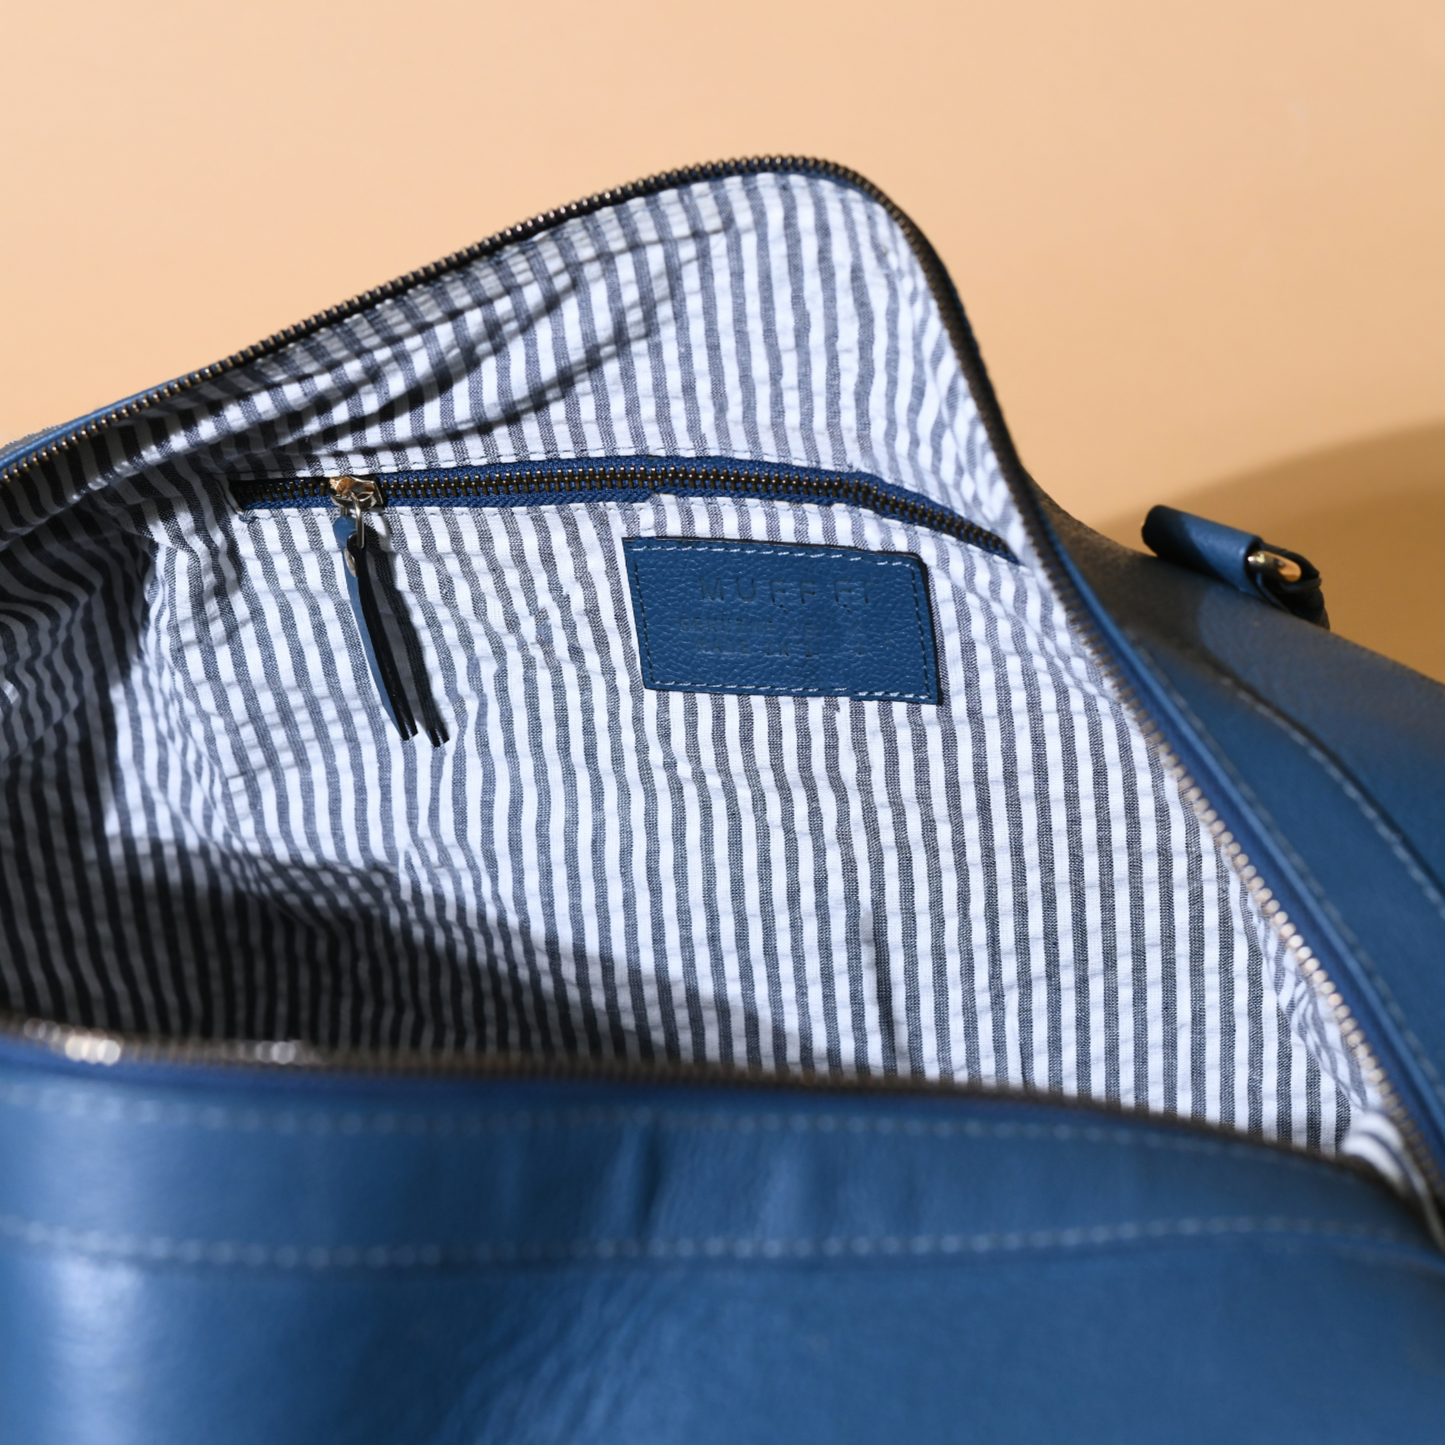 Travel weekender bag - I blue